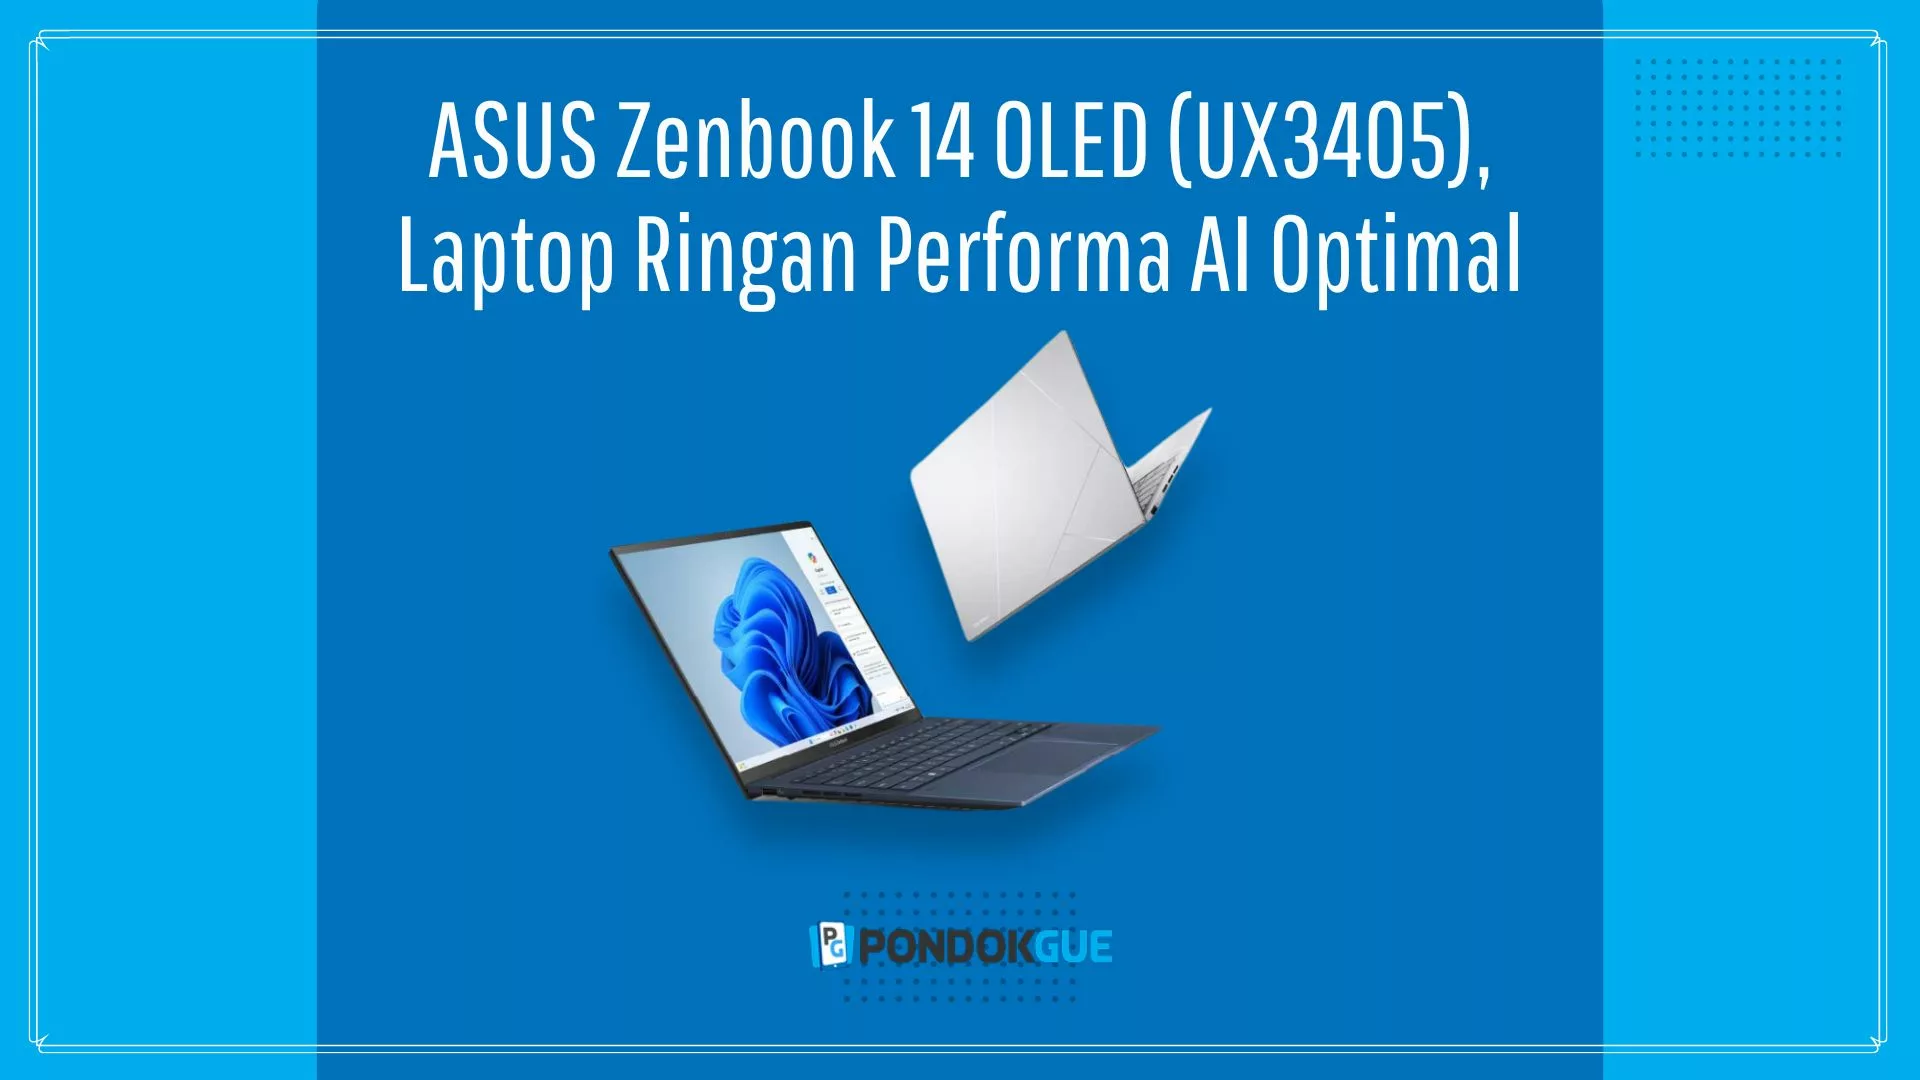 ASUS Zenbook 14 OLED (UX3405) - Pondokgue.com